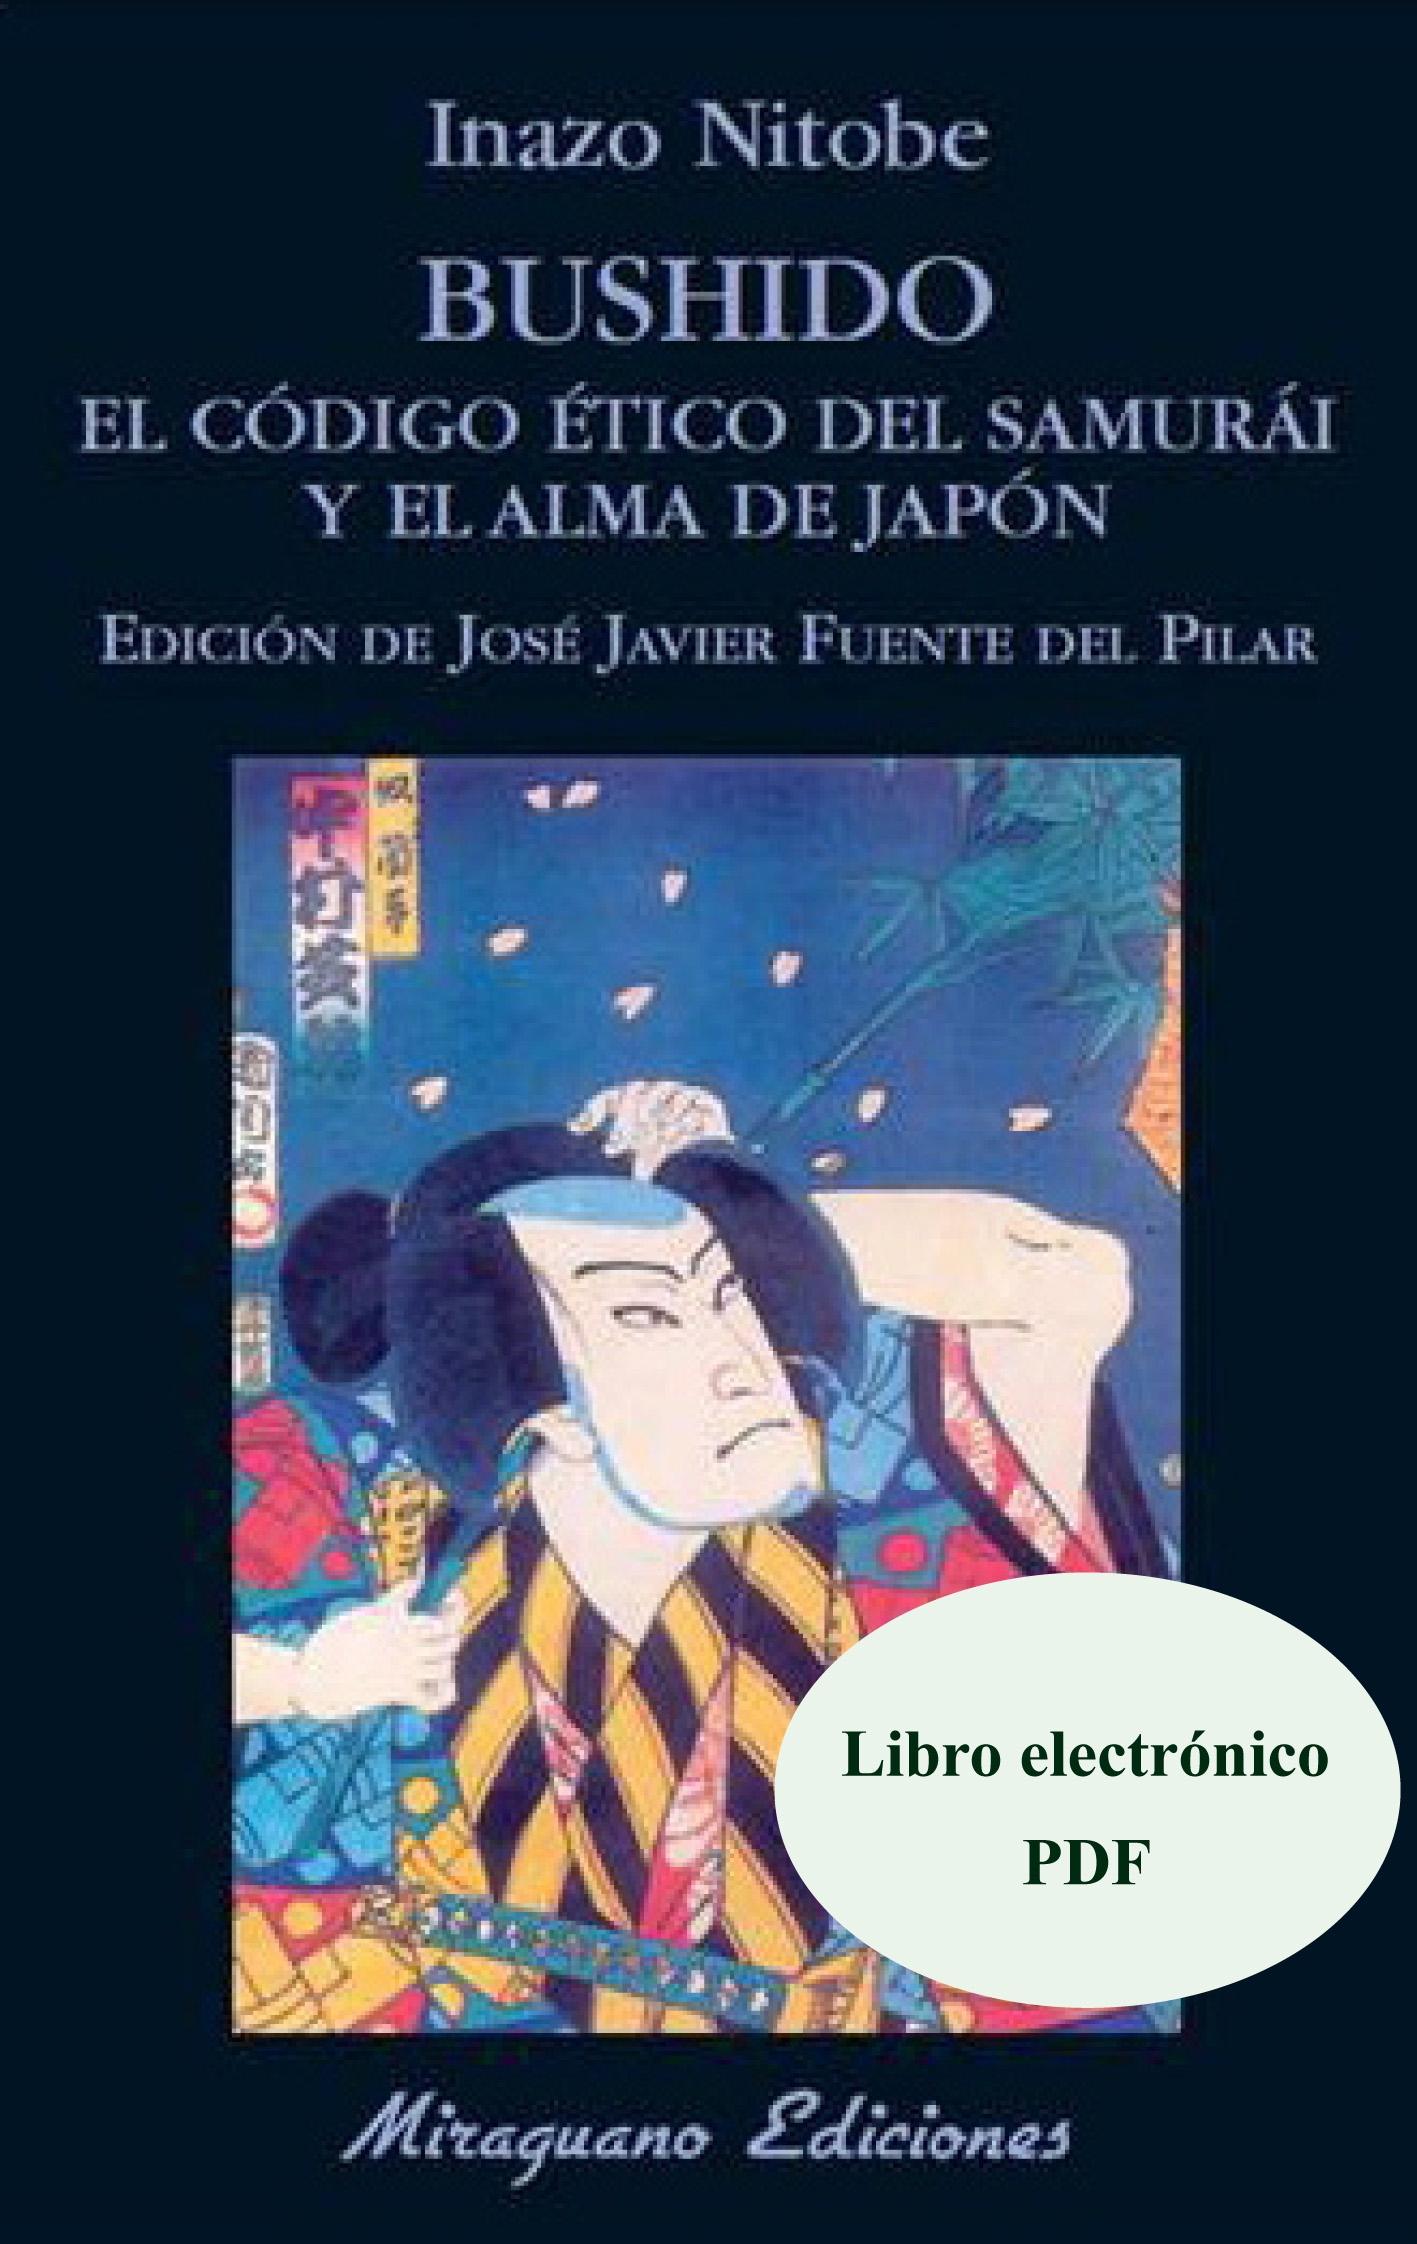 Bushido "El código ético del samurai. Libro Electrónico (PDF)"